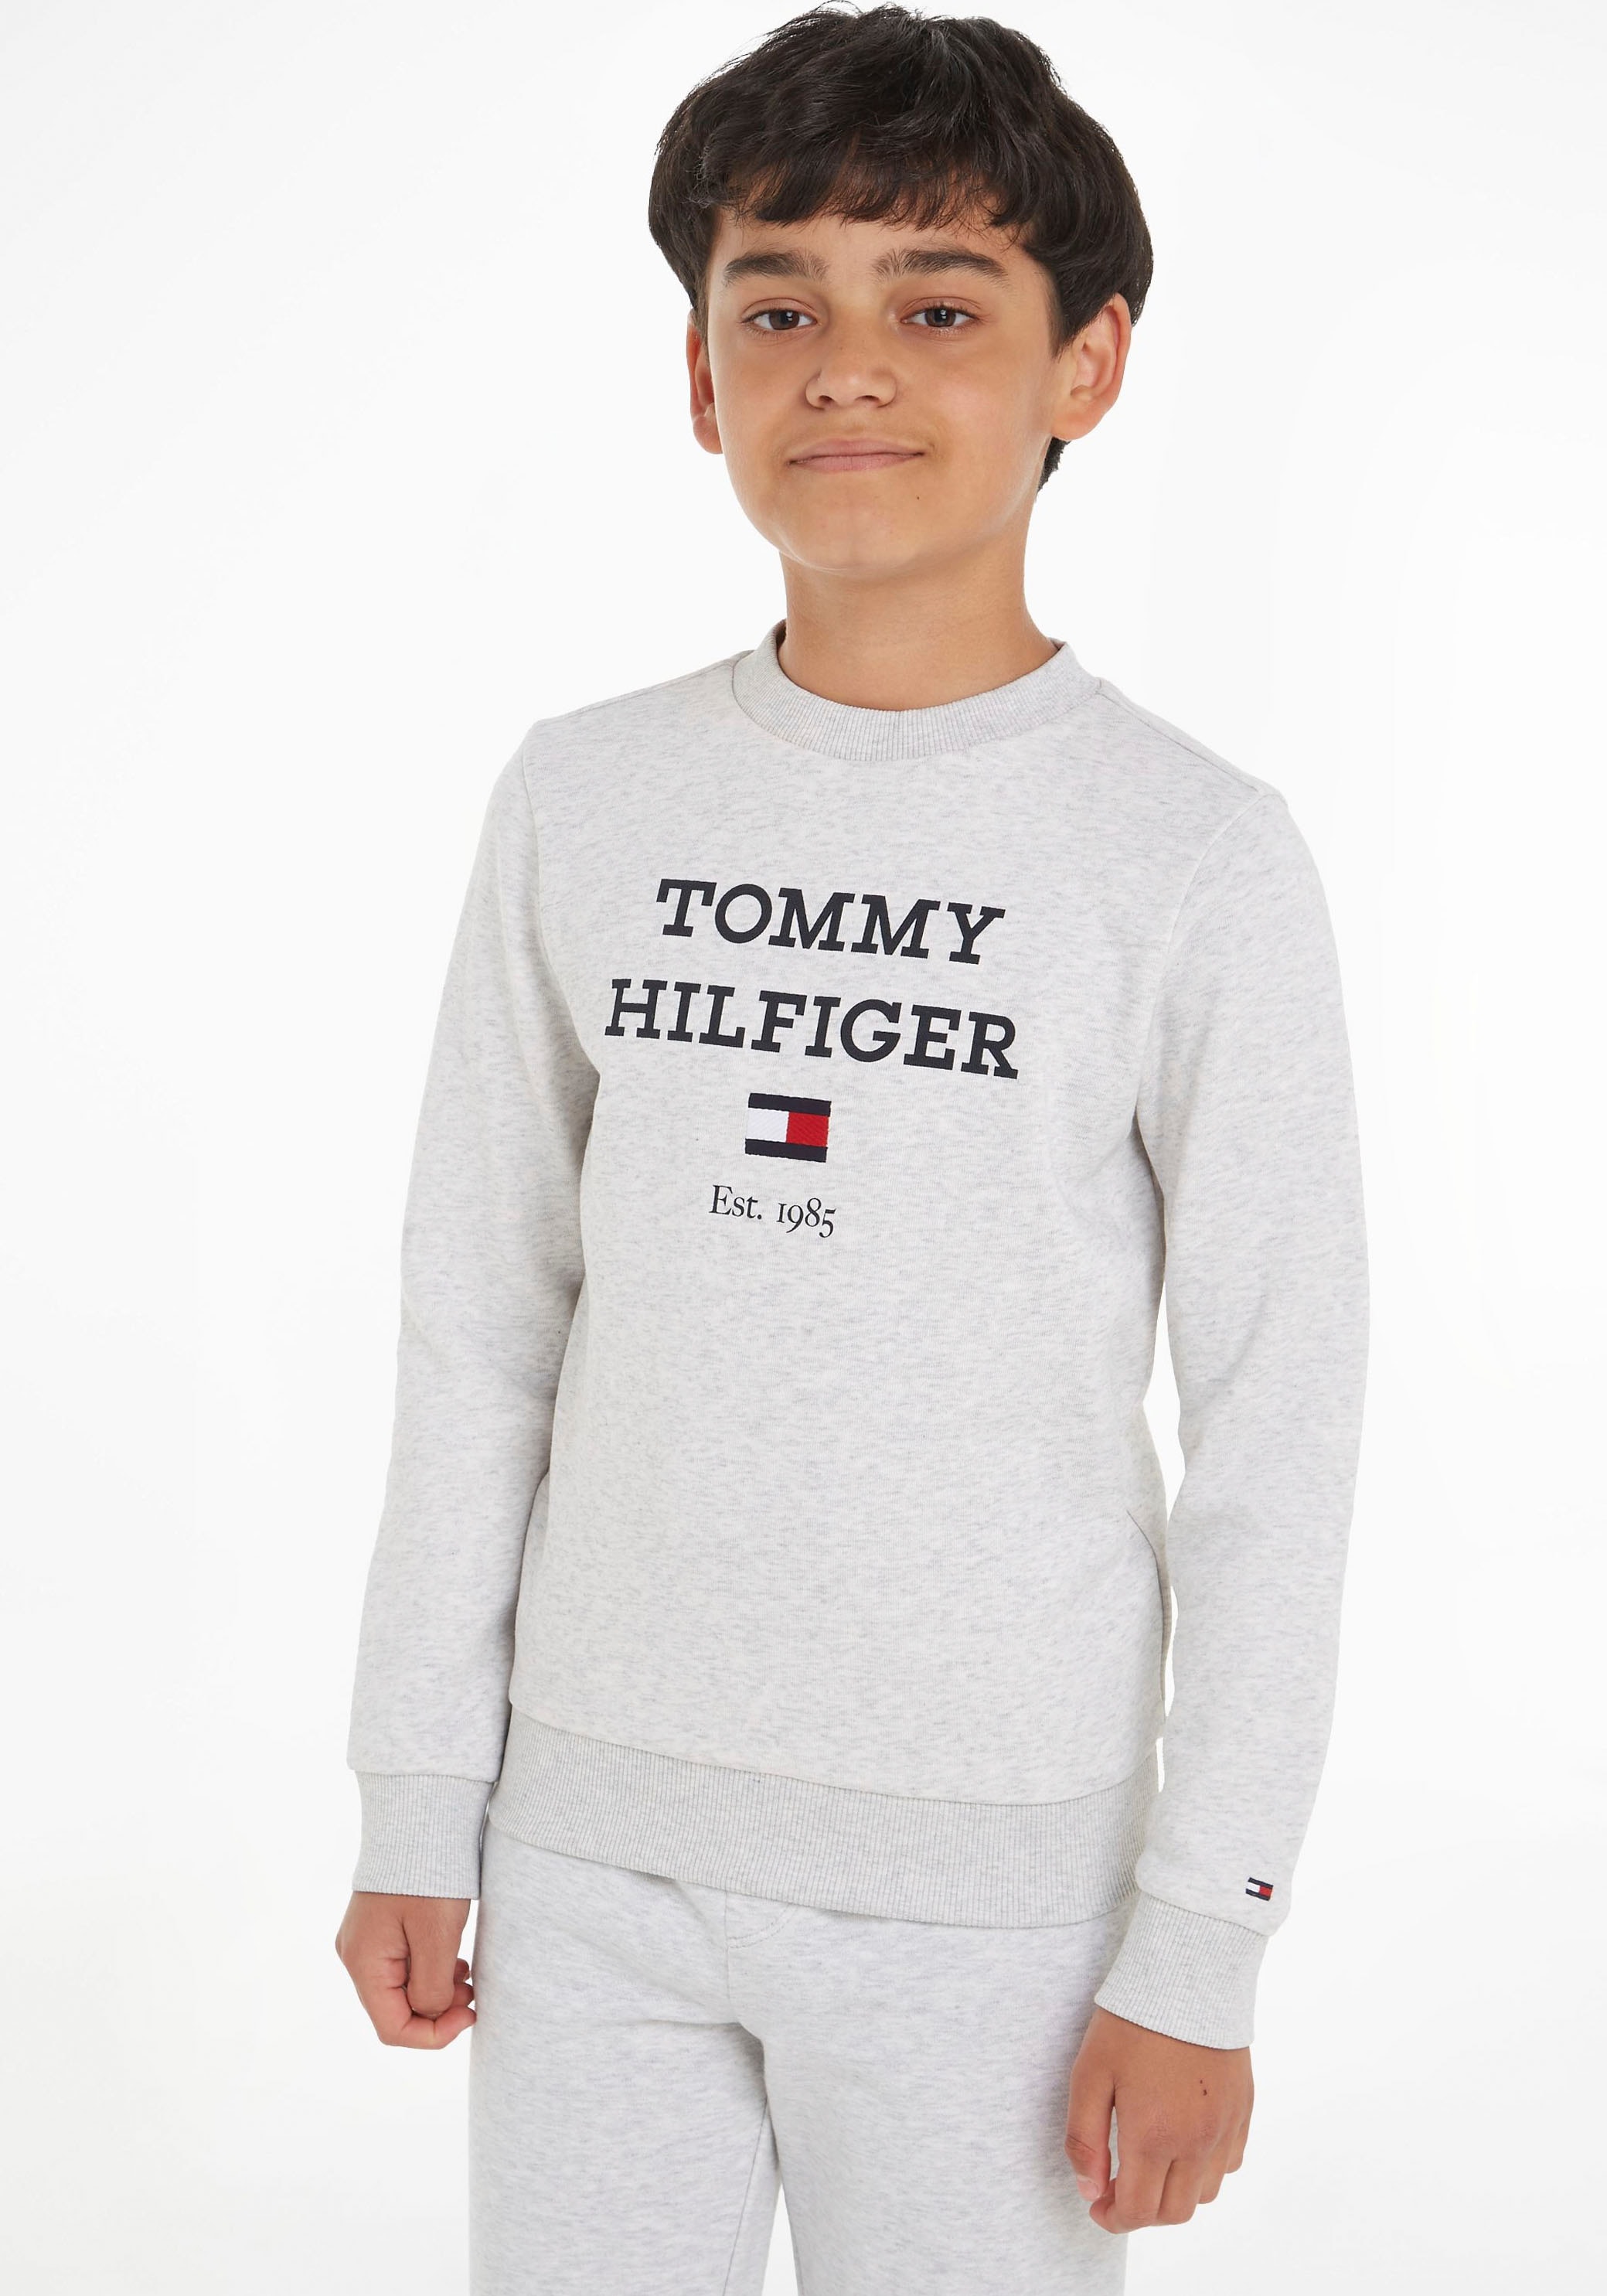 kaufen LOGO Mindestbestellwert Tommy Sweatshirt mit Logo grossem »TH SWEATSHIRT«, Hilfiger ohne Trendige